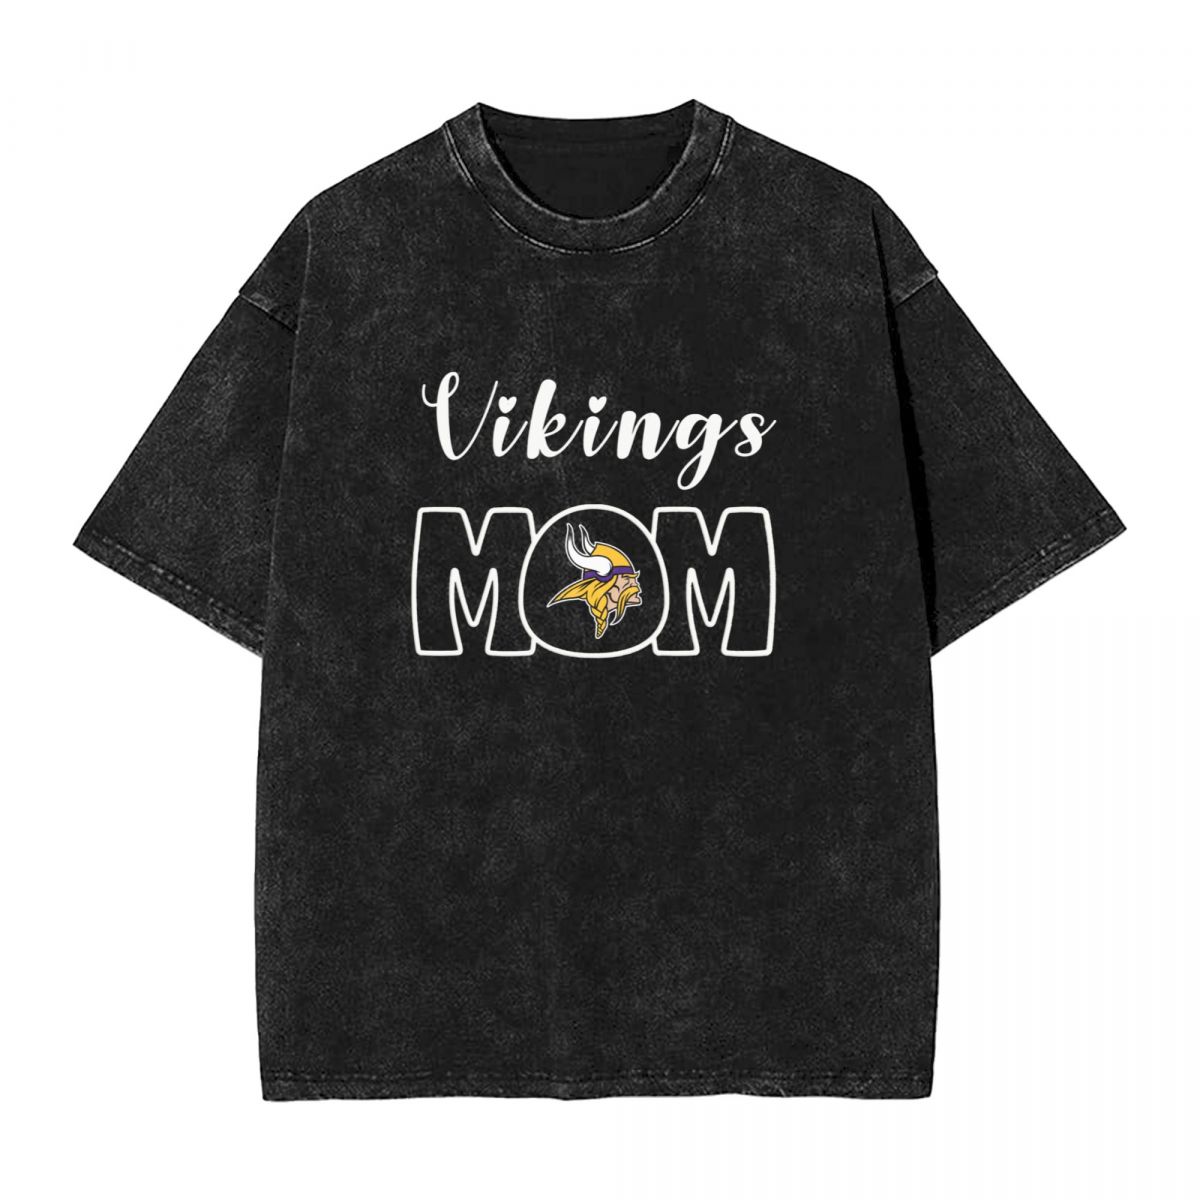 Minnesota Vikings Mom Vintage Oversized T-Shirt Men's